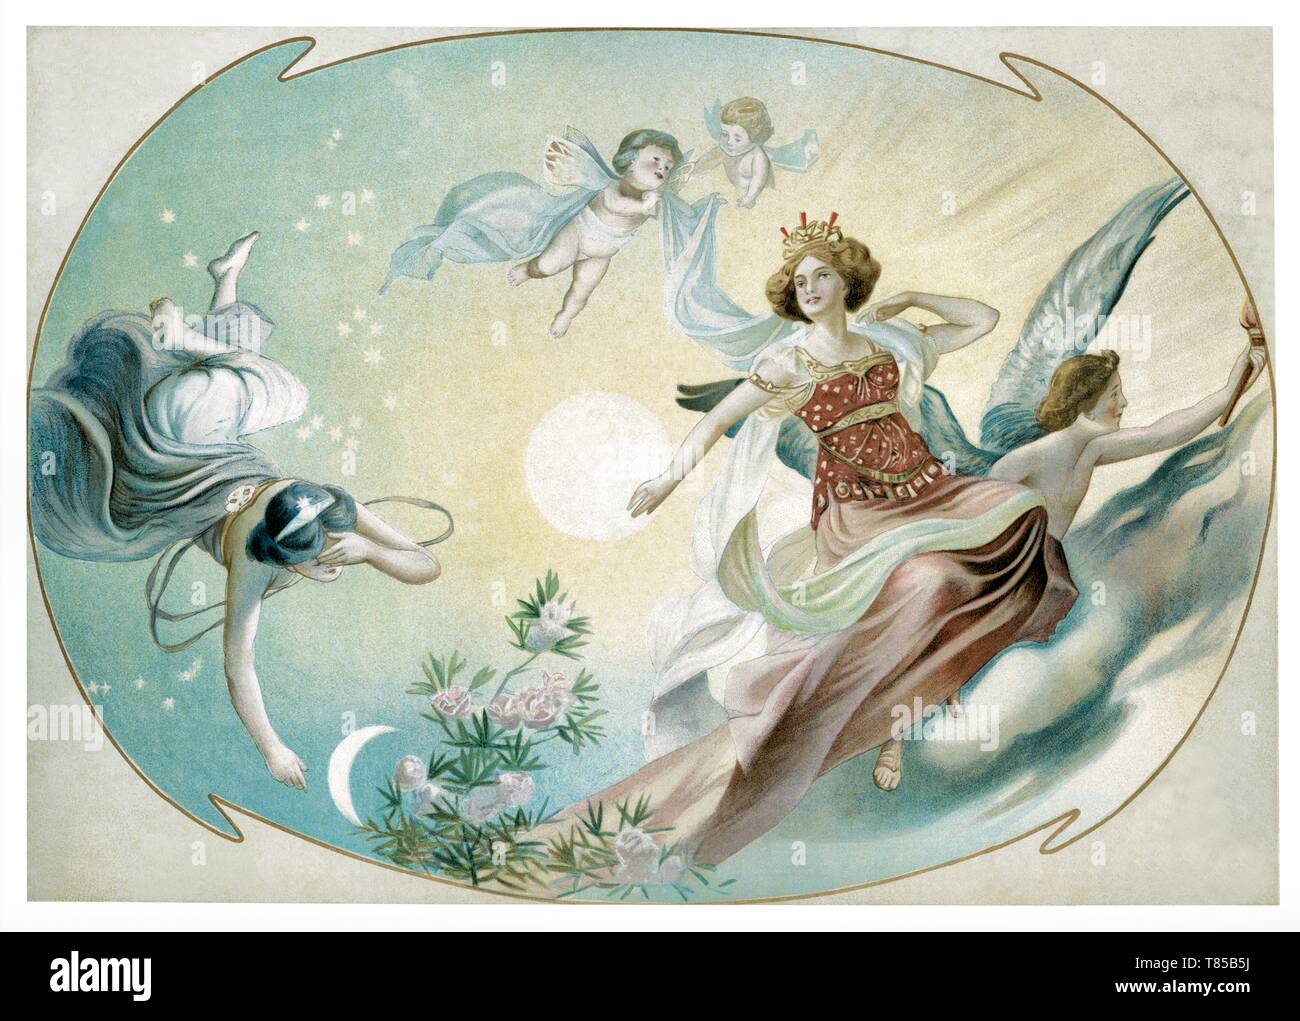 Malerei: Decke mit Engel und Putten in einem blauen Himmel - Vintage Abbildung durch figurative Malerei 1910 Stockfoto